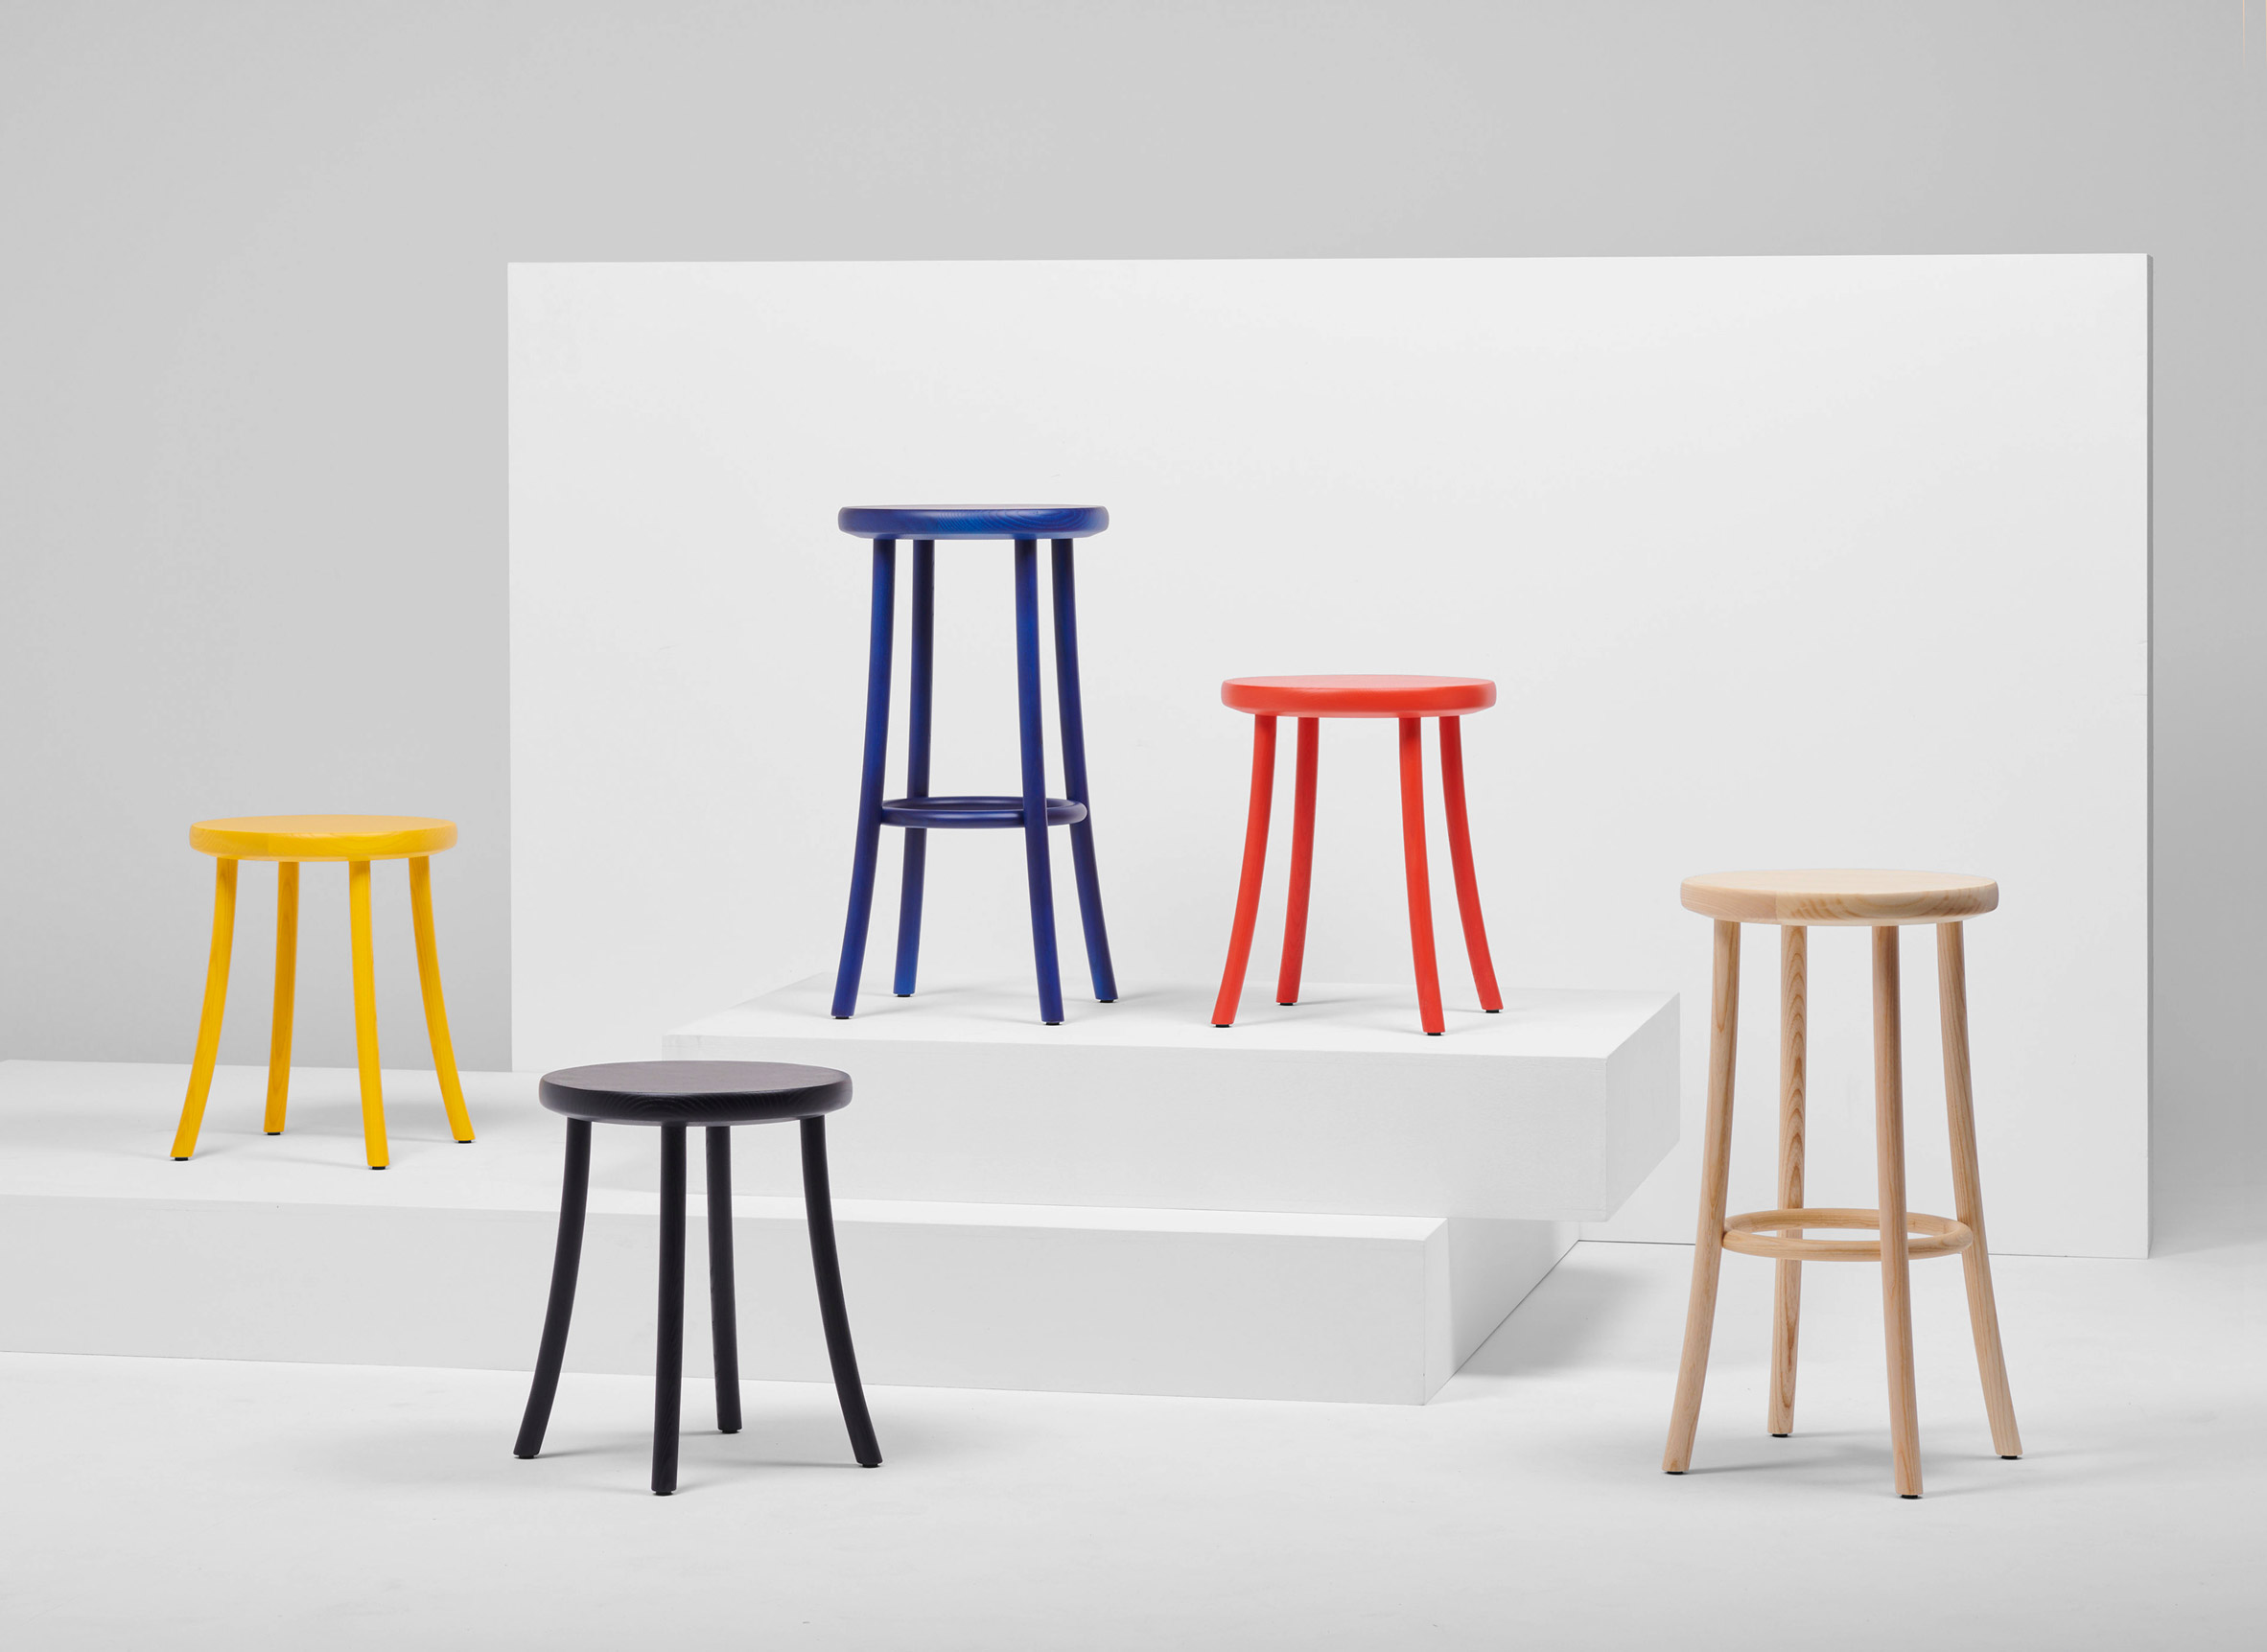 Mattiazzi debuts four new seating designs at Milan Design Week